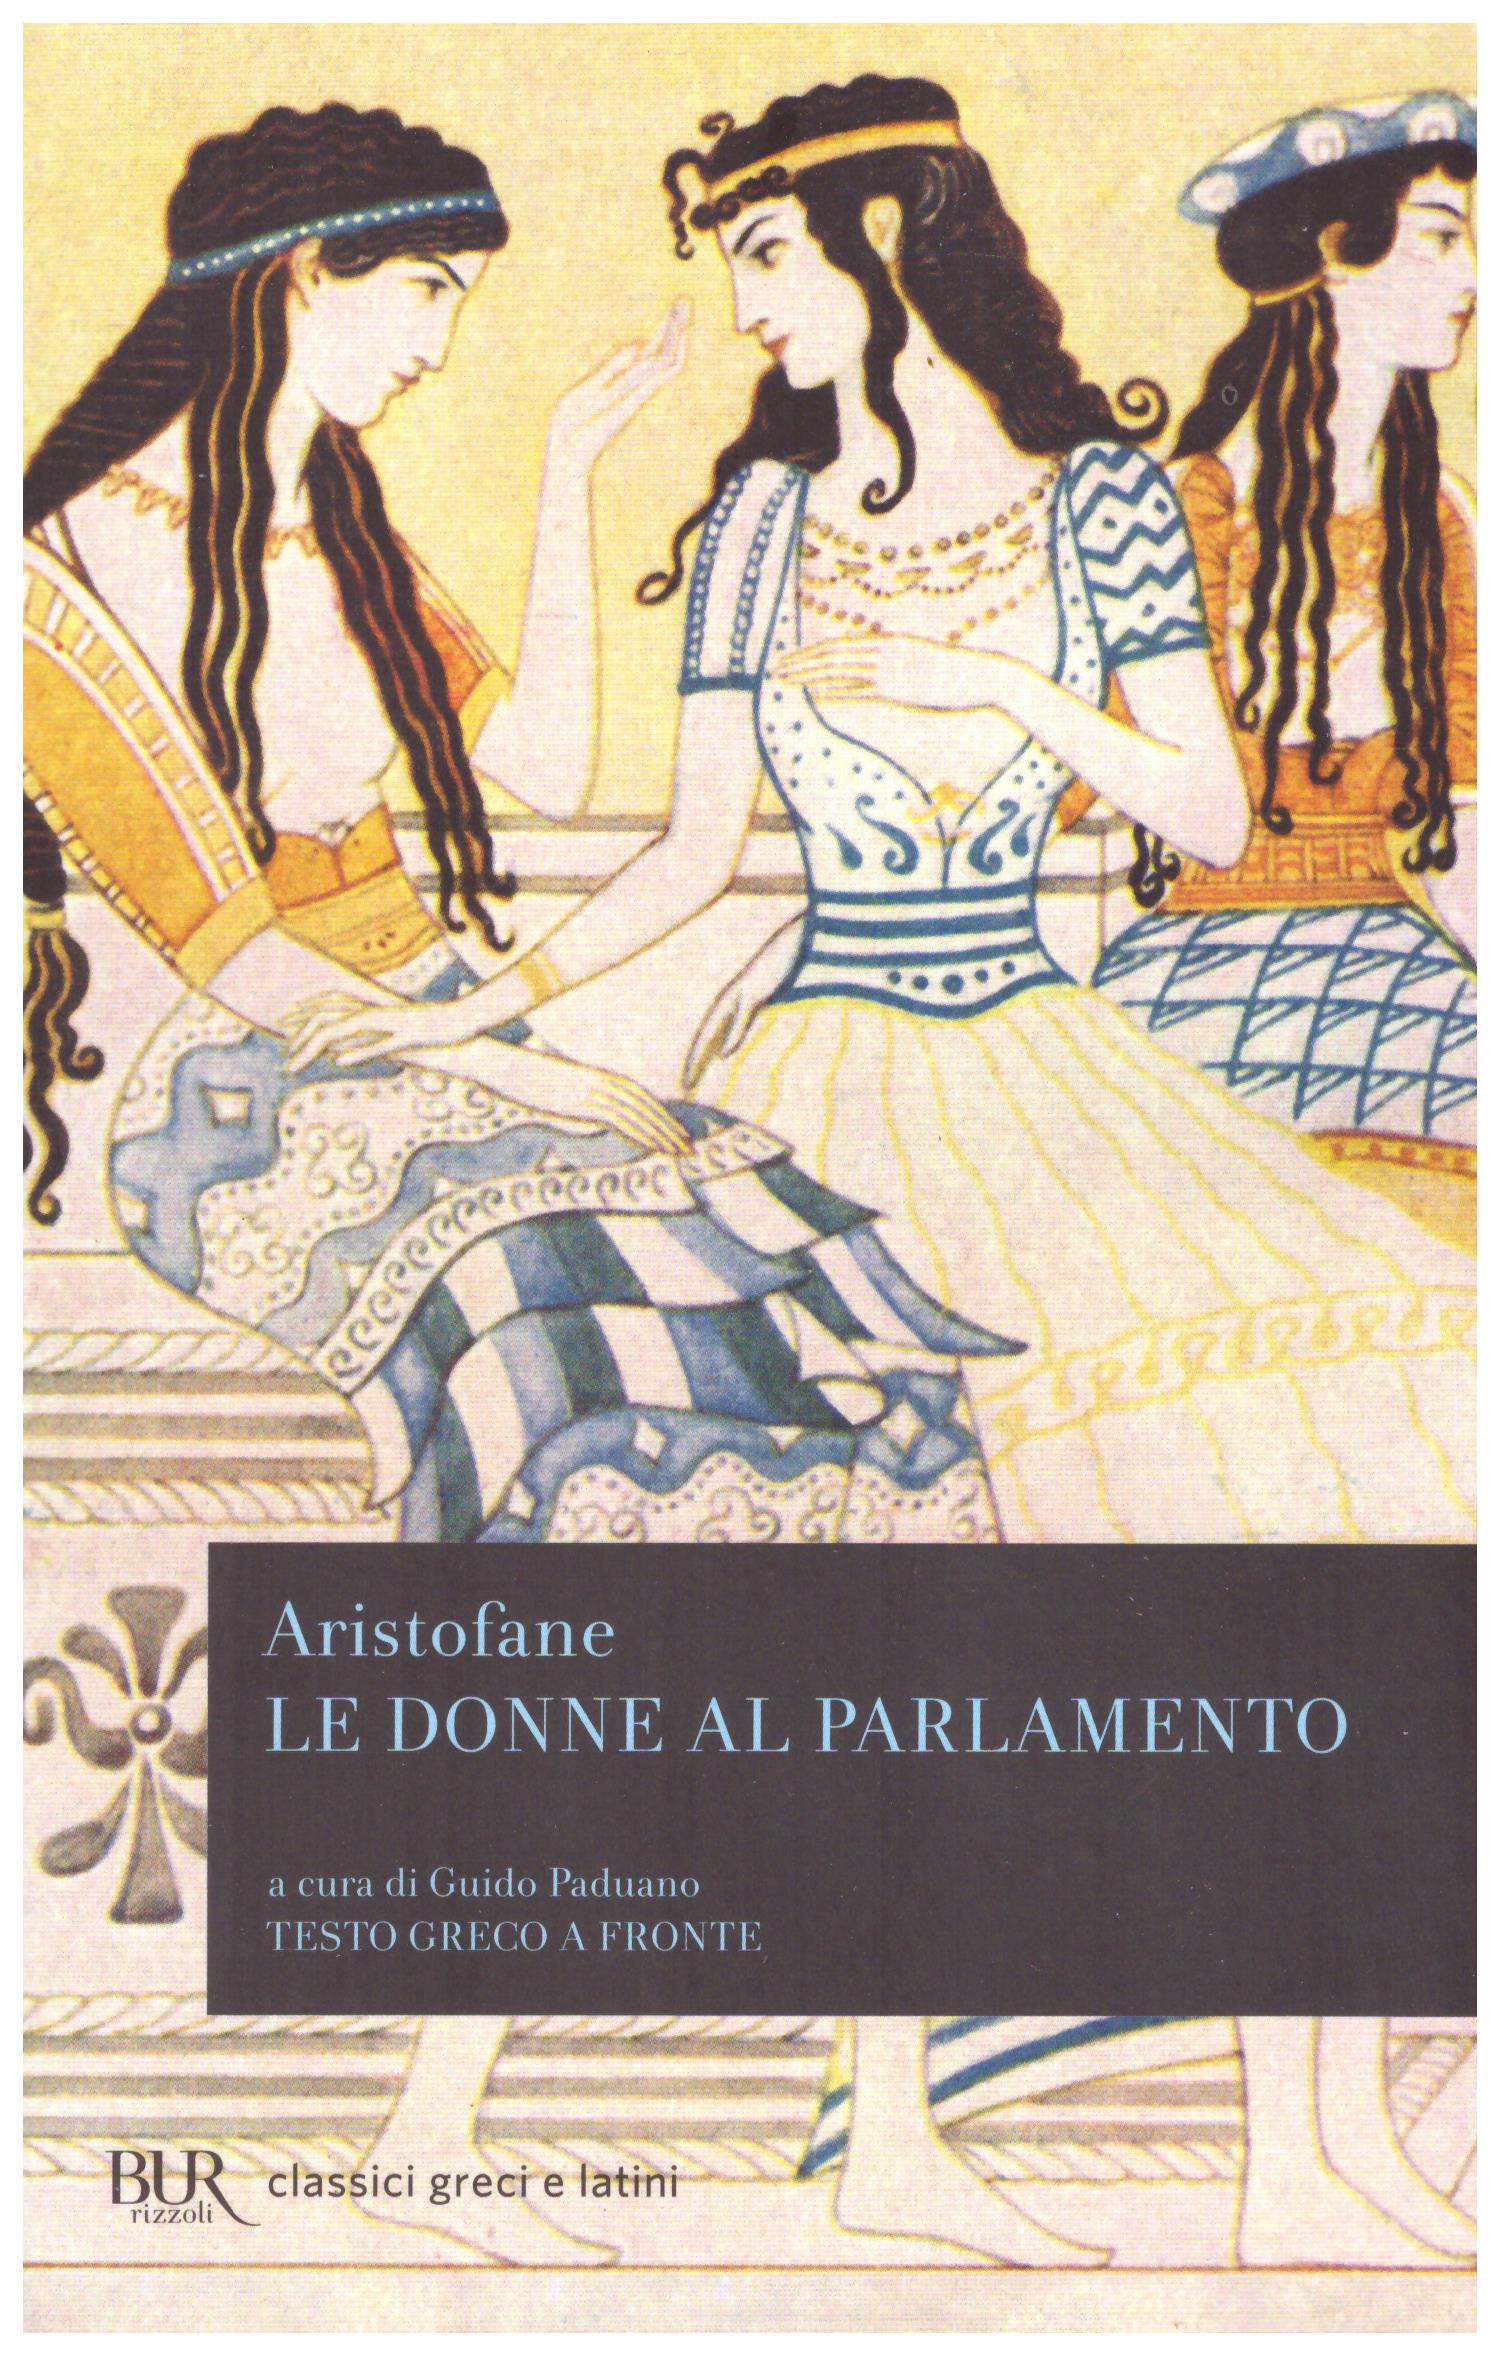 Titolo: Le donne al parlamento Autore: Aristofane Editore: Bur, 2013